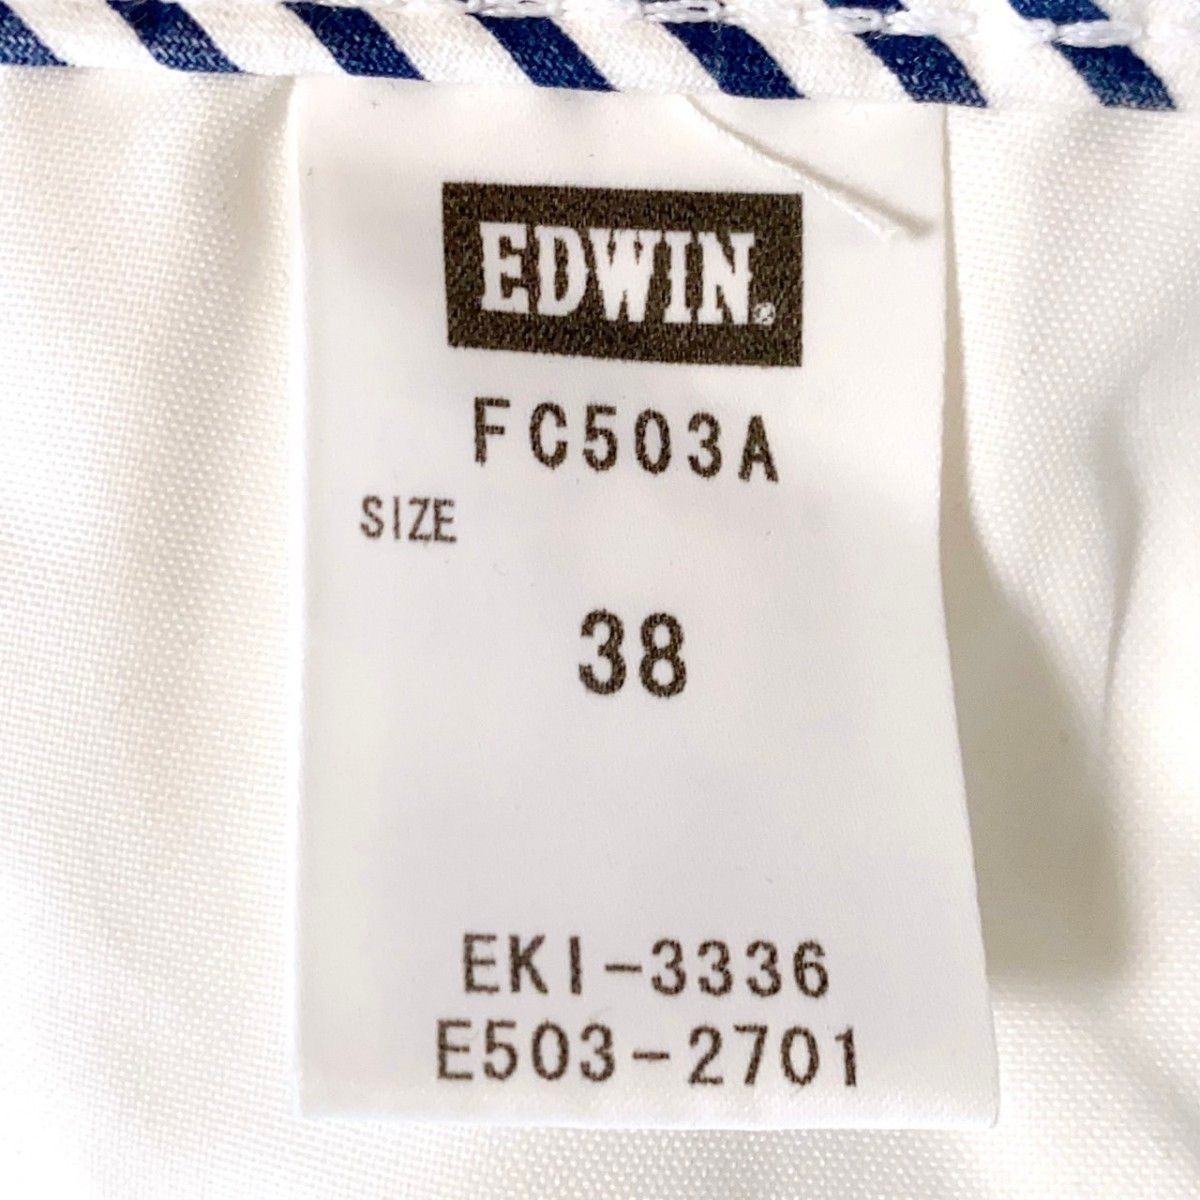 EDWIN エドウィン 白 パンツ 新品 503 麻 ボトムス メンズ 男性用 COOL クール 38 大きいサイズ 白パンツ